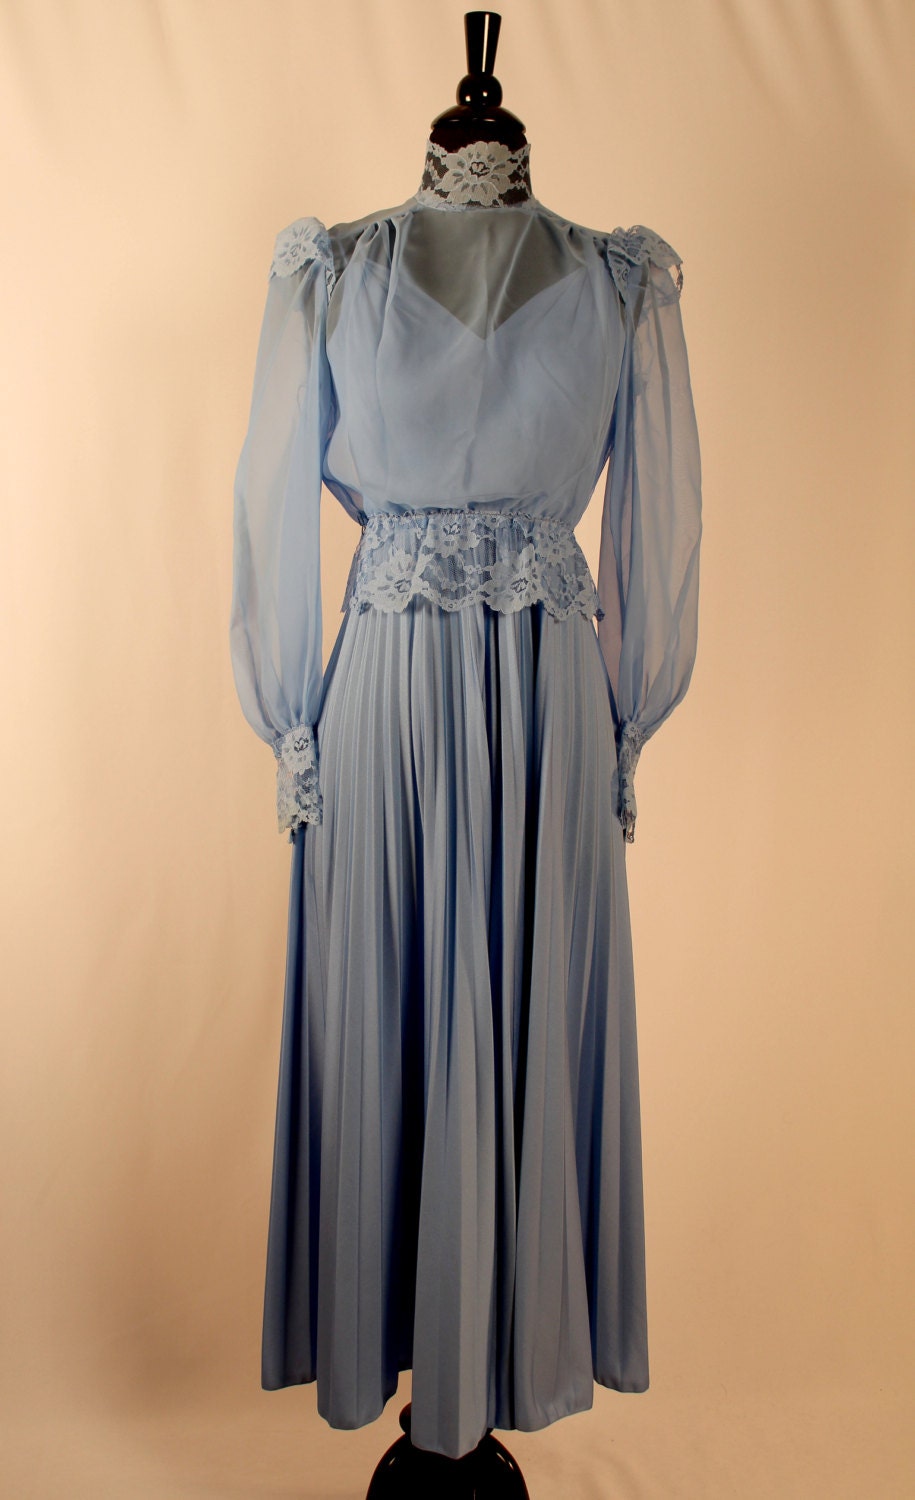 SALE- Vintage 1970s Princess Blue Belle' Epoque Maxi Dress Steampunk Victorian Downton Abbey